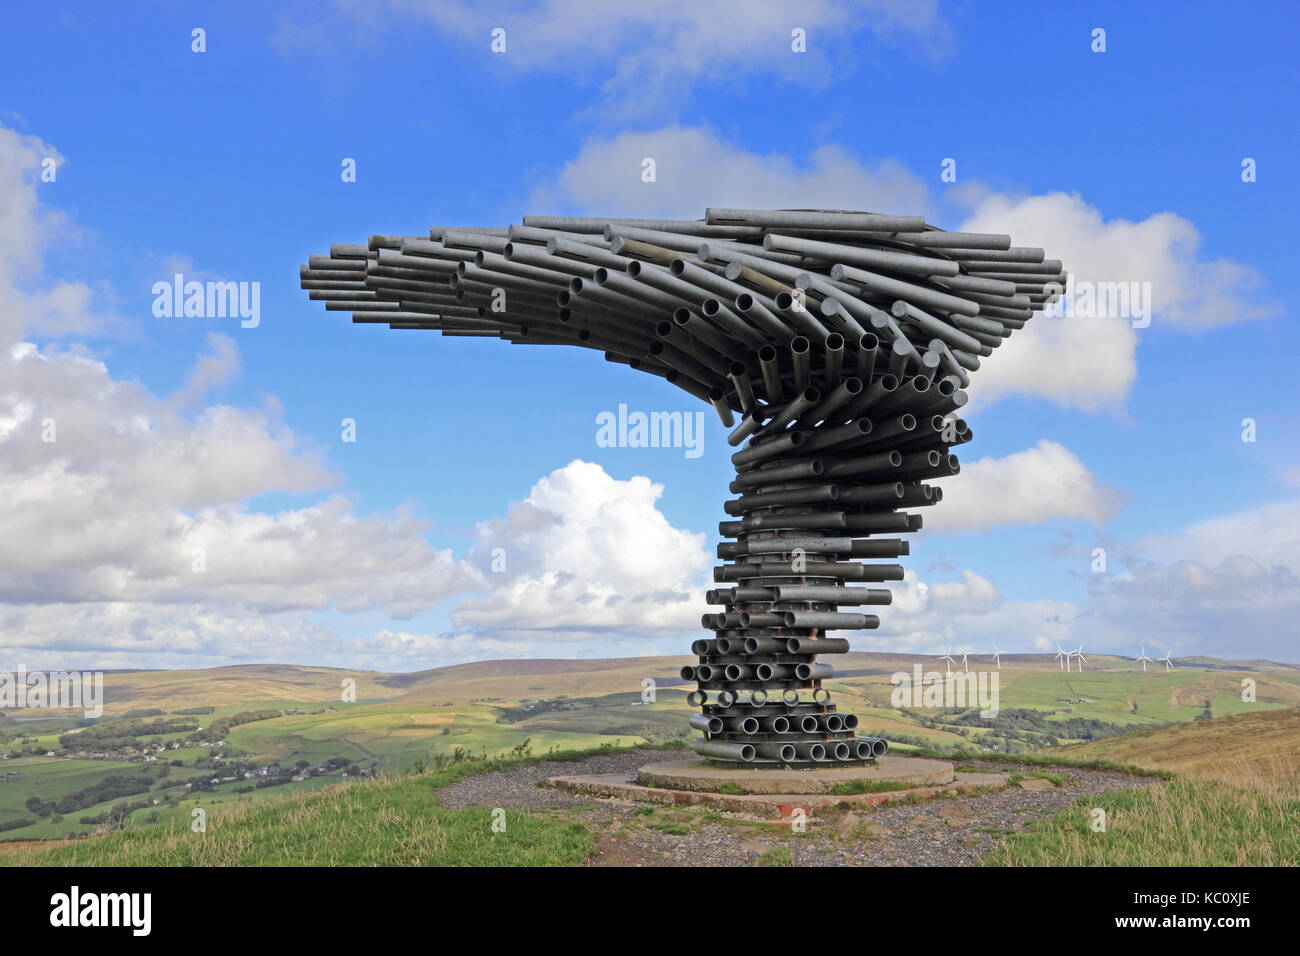 Le chant de la sculpture d'arbres en sonnerie sur une colline donnant sur burnley, Lancashire Banque D'Images